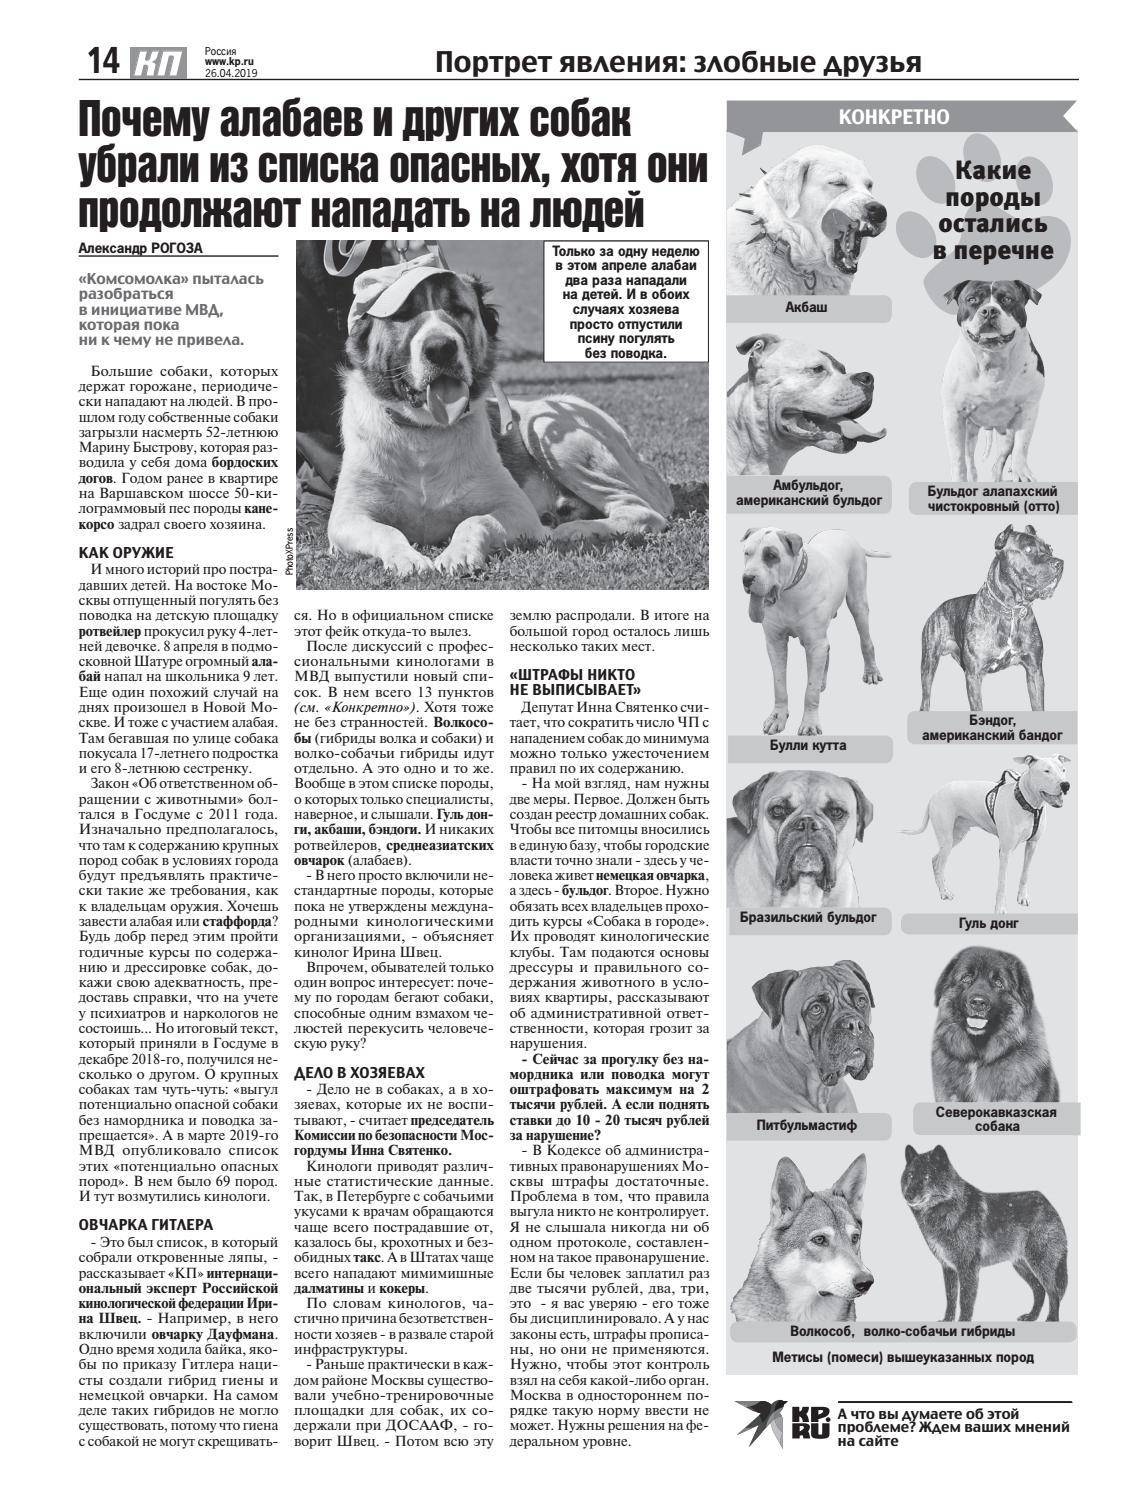 Перечень потенциально опасных пород собак, утвержденный правительством рф: требования к владельцам и к содержанию